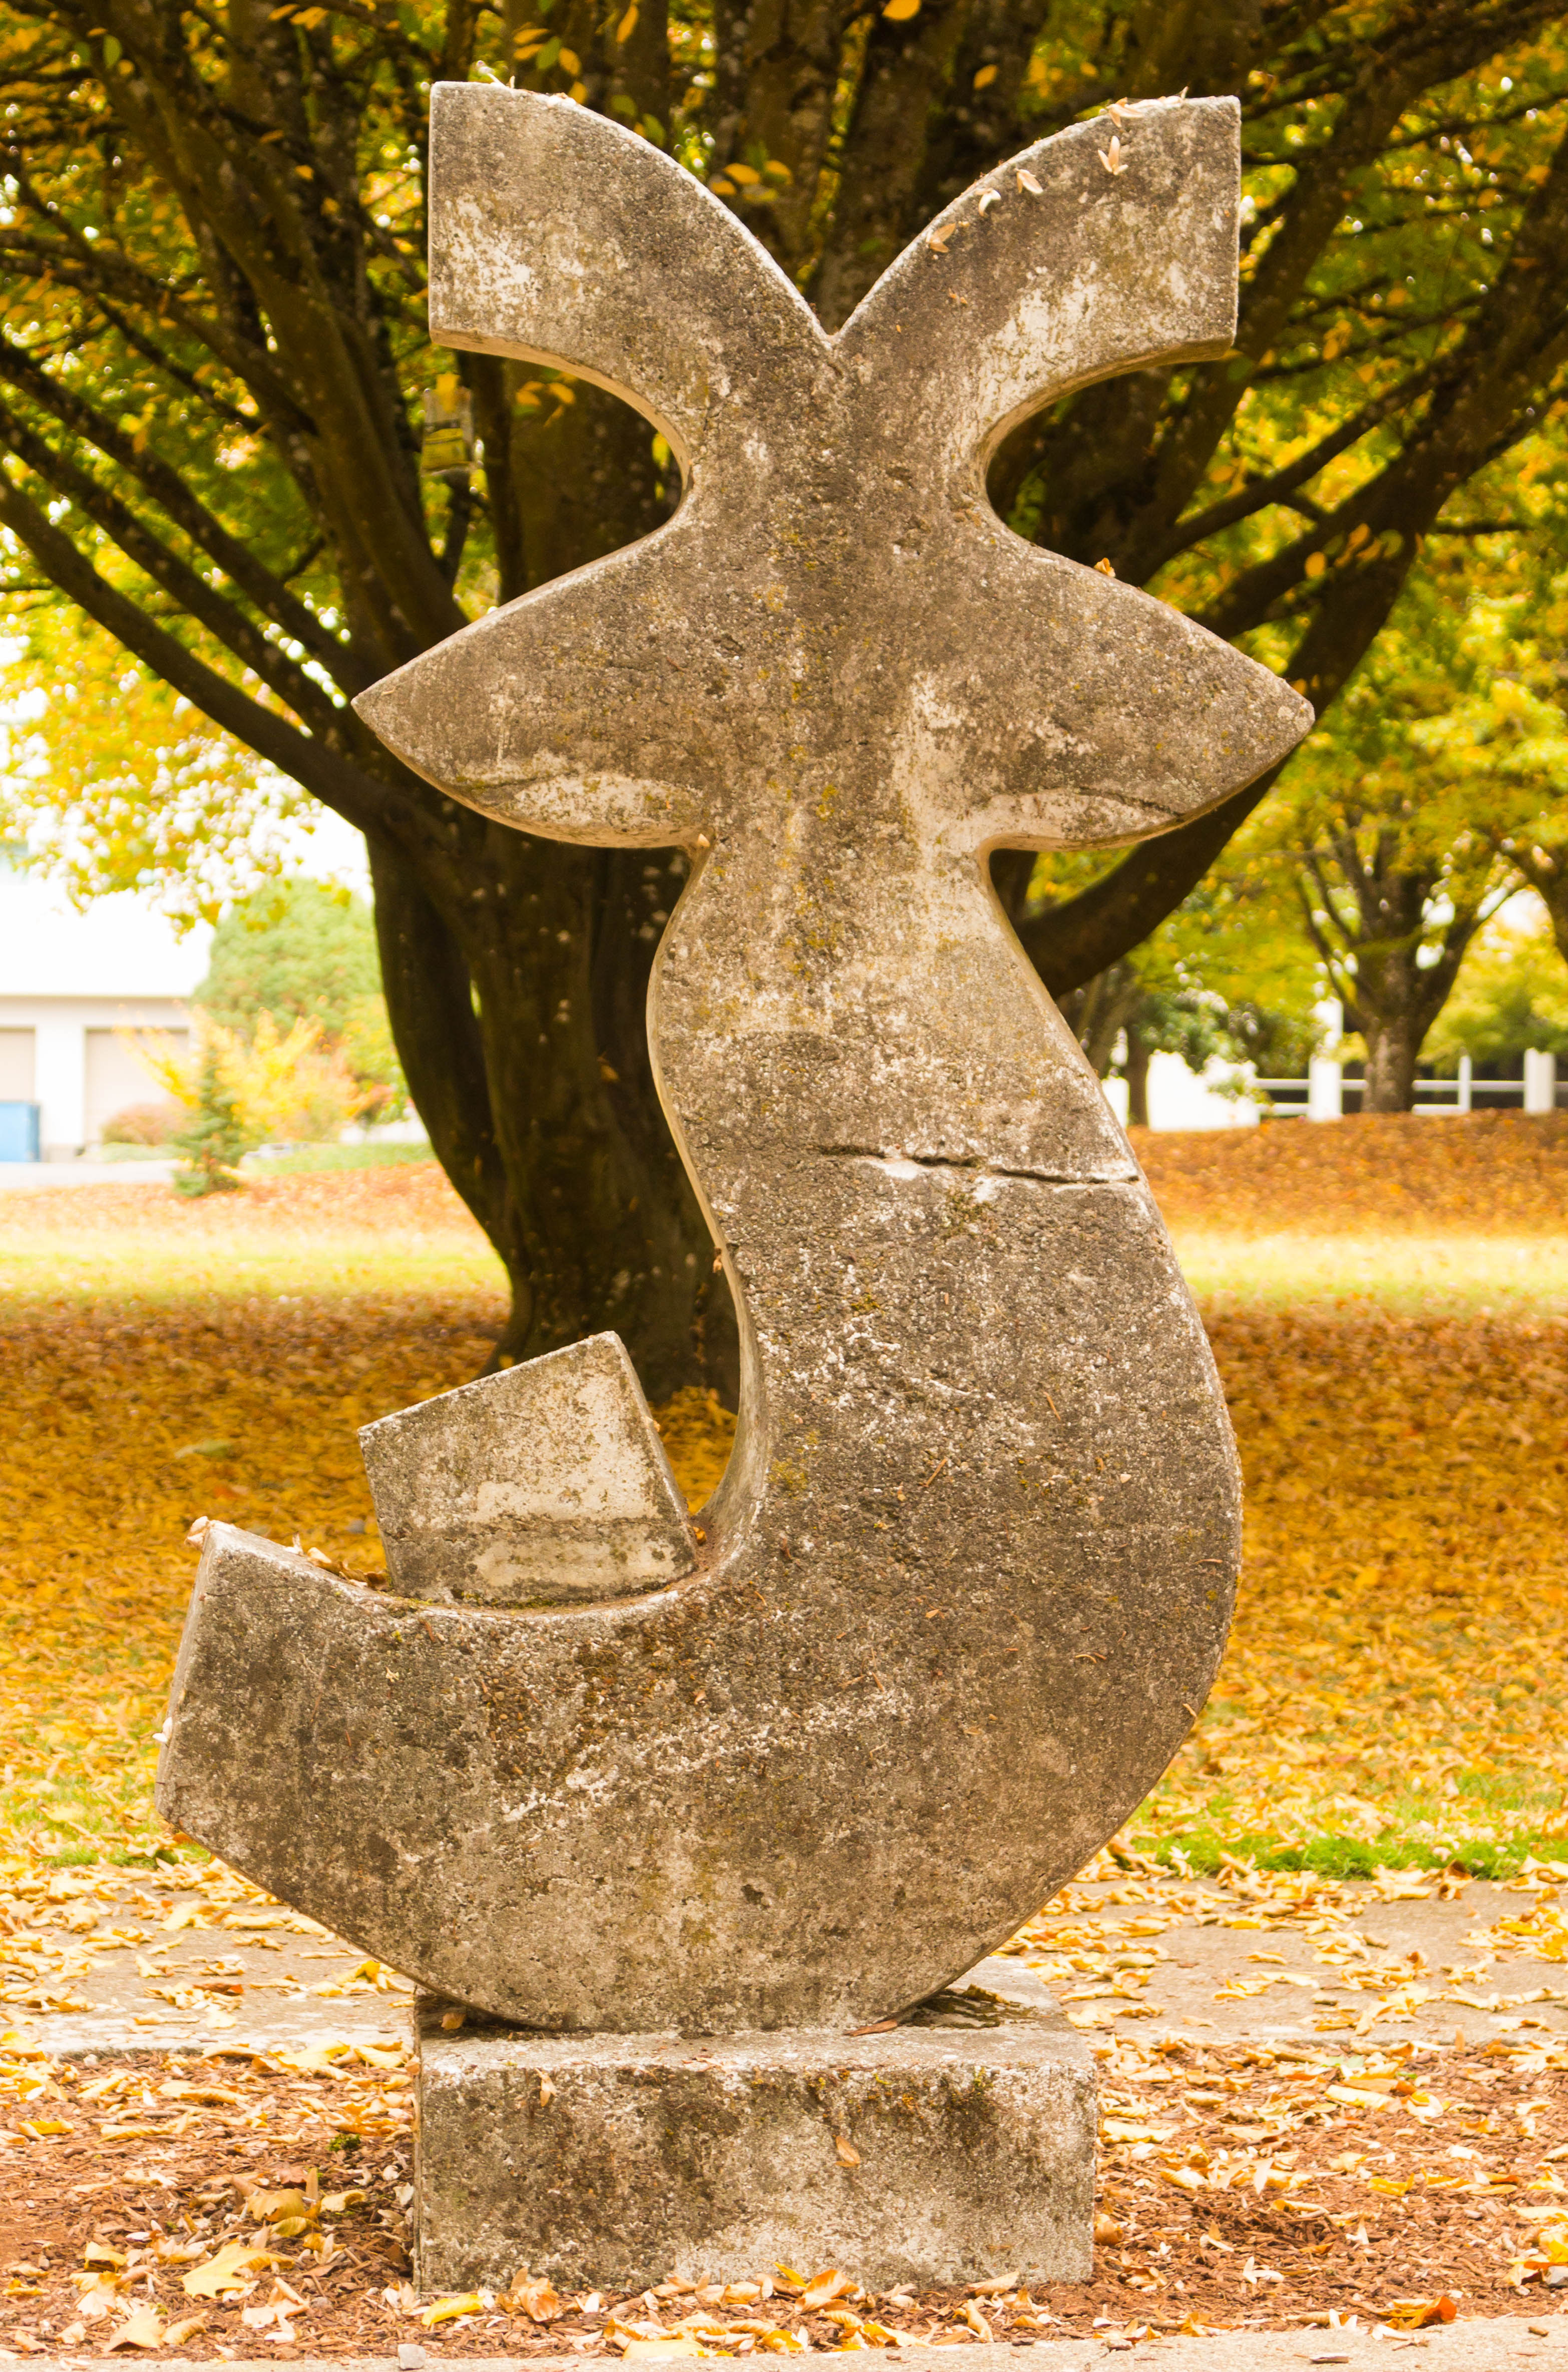 Campus art feature: “Iberian Venus” sculpture by Manuel Izquierdo